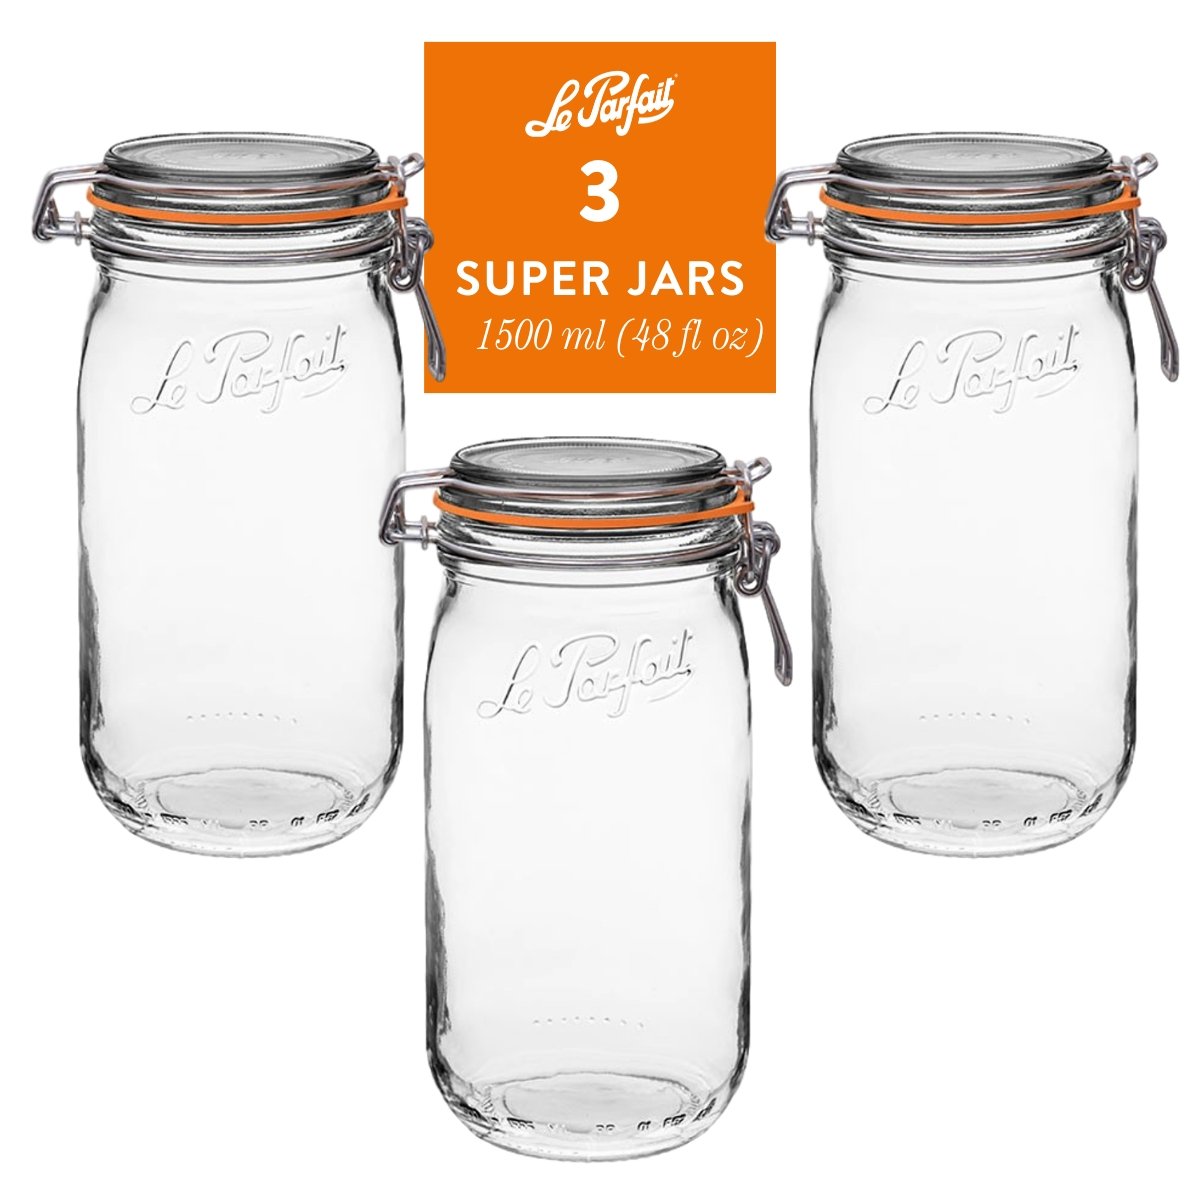 https://www.leparfait.us/cdn/shop/products/le-parfait-super-jars-311291_1024x1024@2x.jpg?v=1682111176